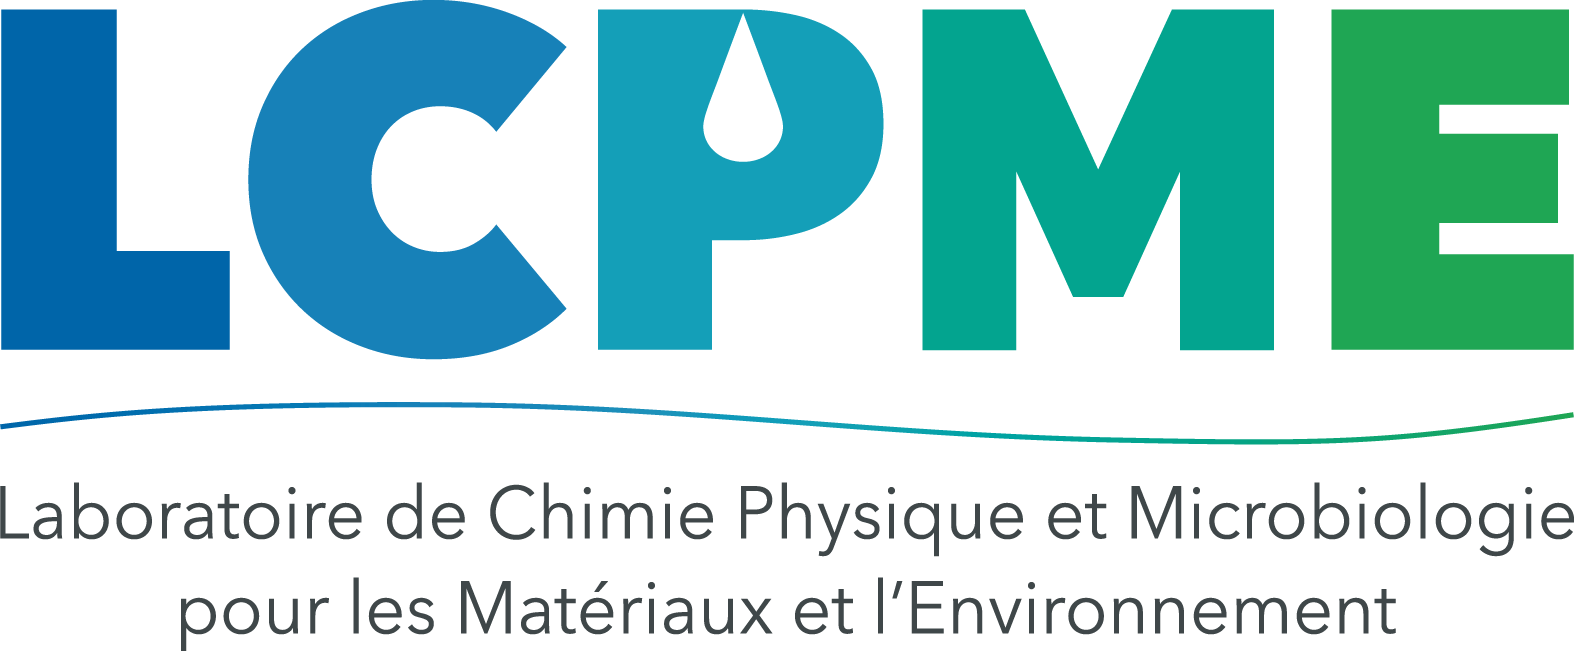 Laboratoire de Chimie Physique et Microbiologie pour les Matériaux et l'Environnement